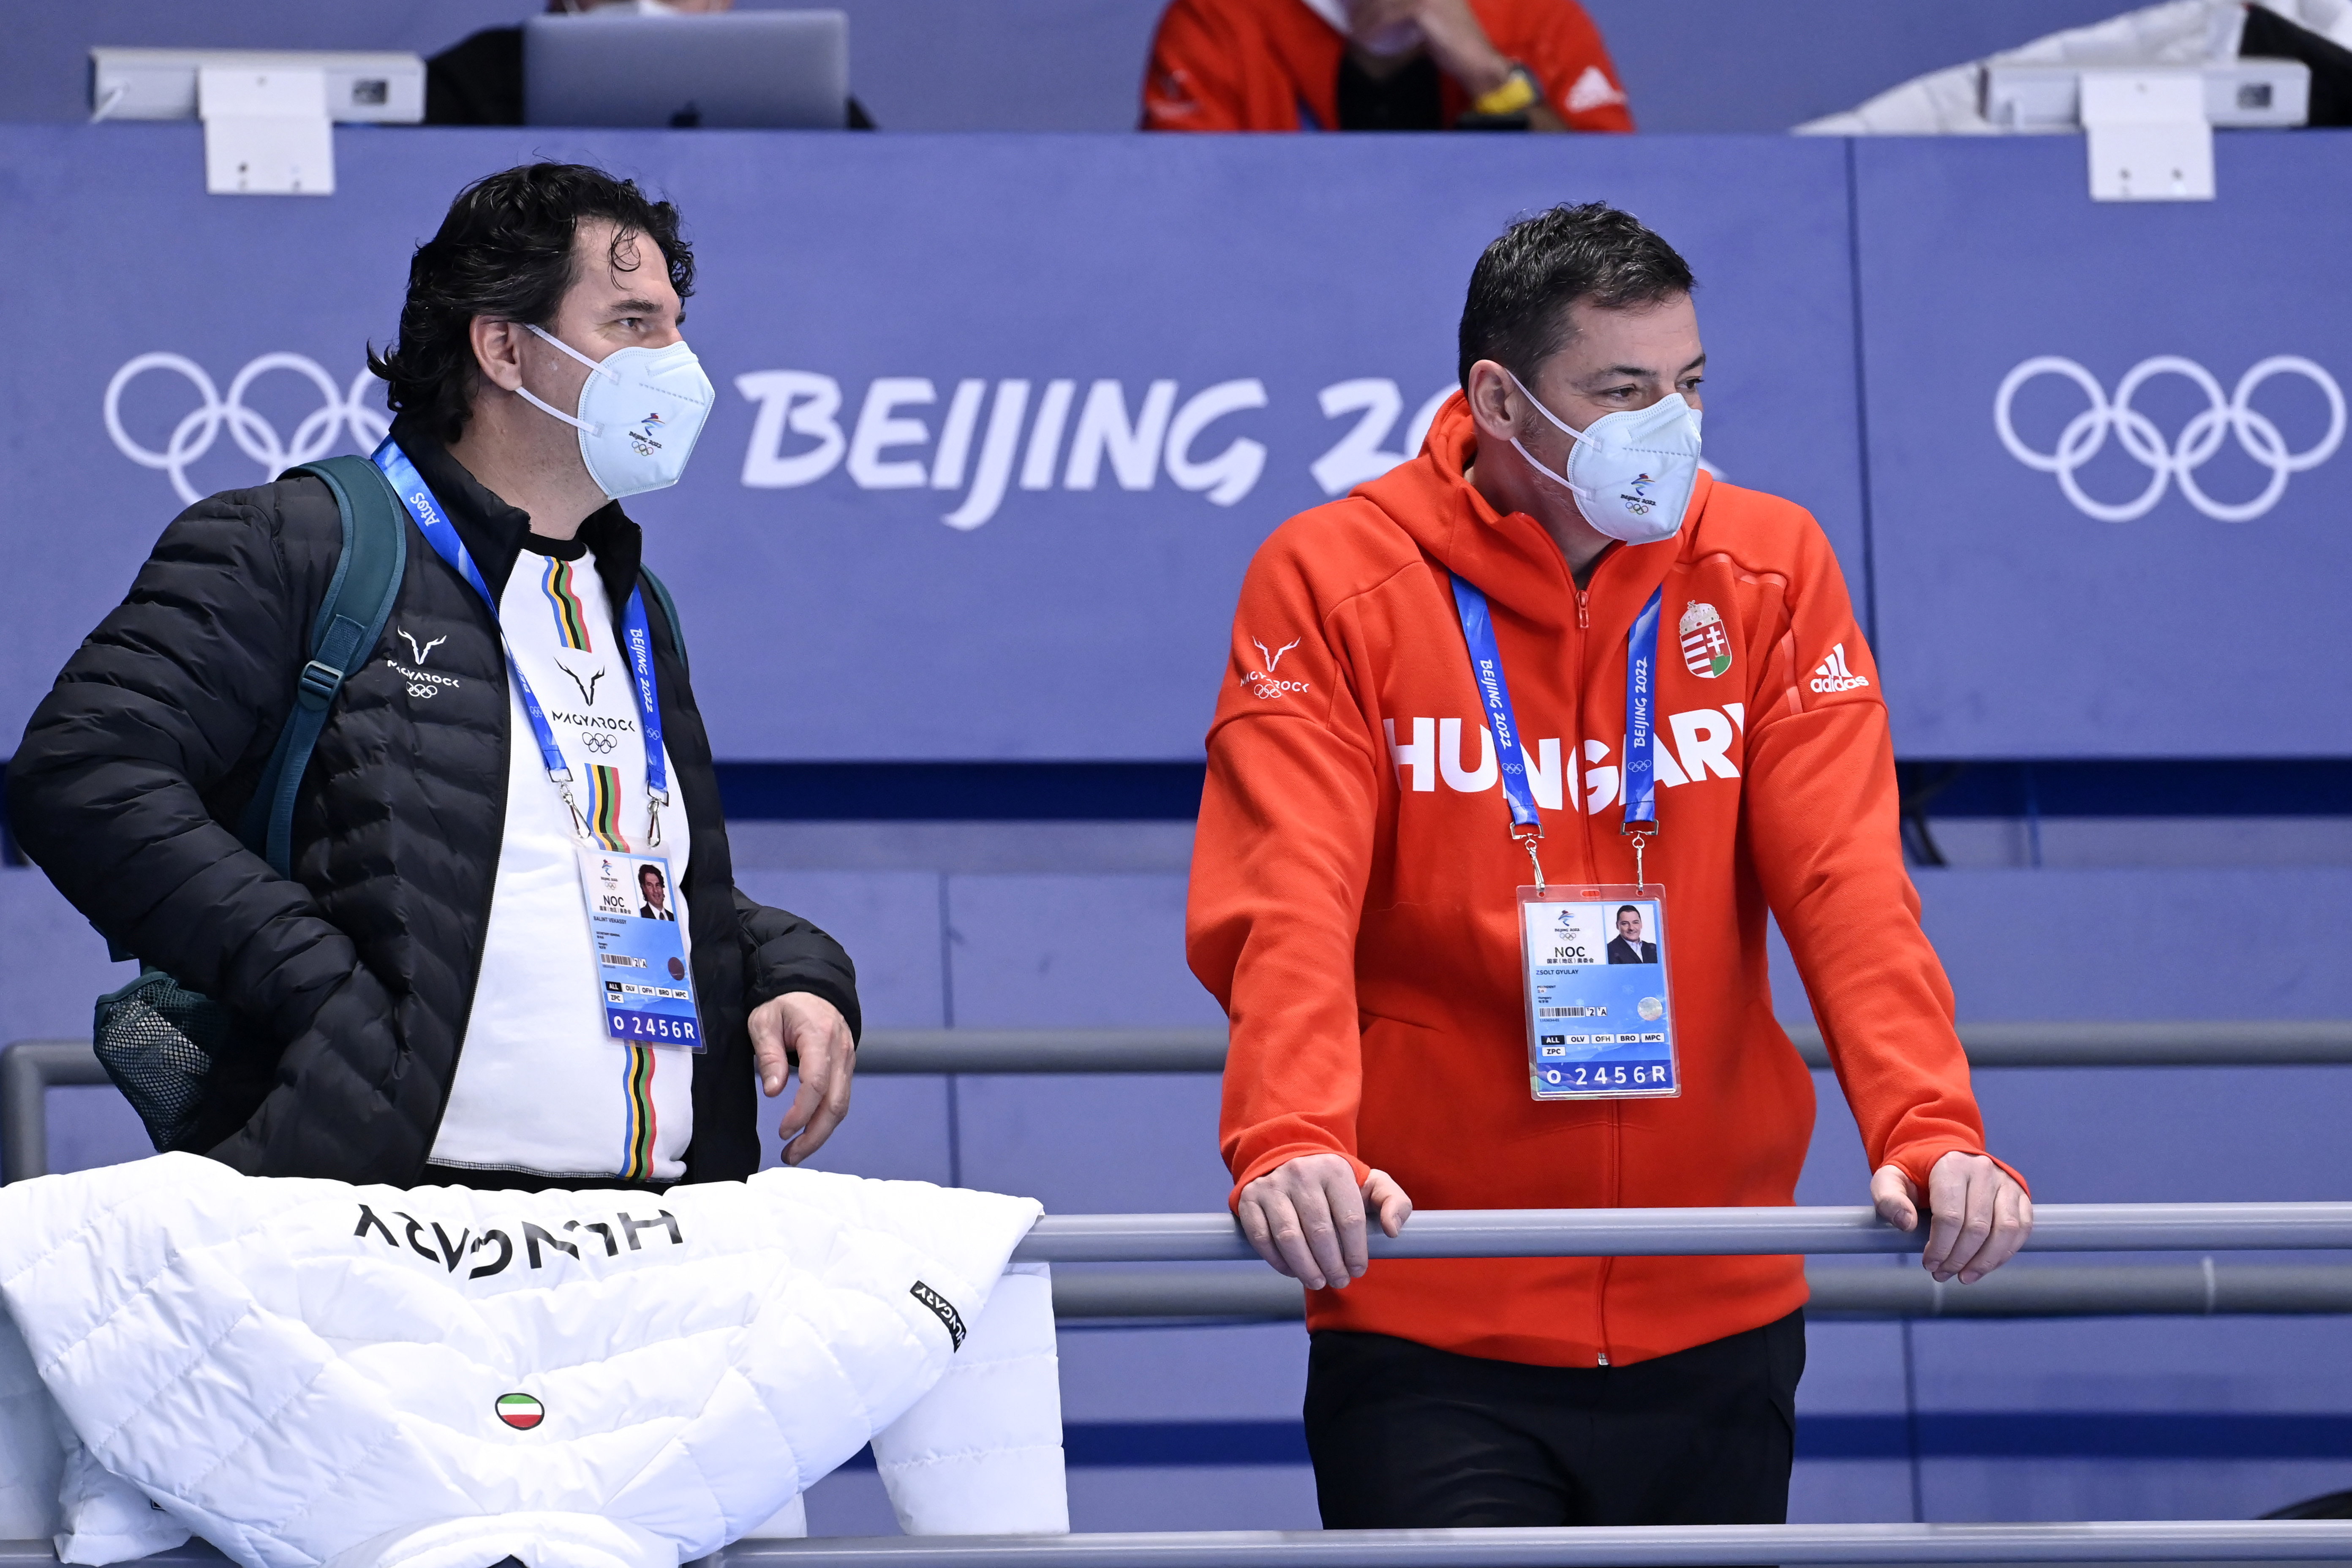 A Magyar Olimpiai Bizottság főtitkára belebukott Liu Shaoang vádjaiba,  Gundel Takács Gábor is távozik - Sportal.hu